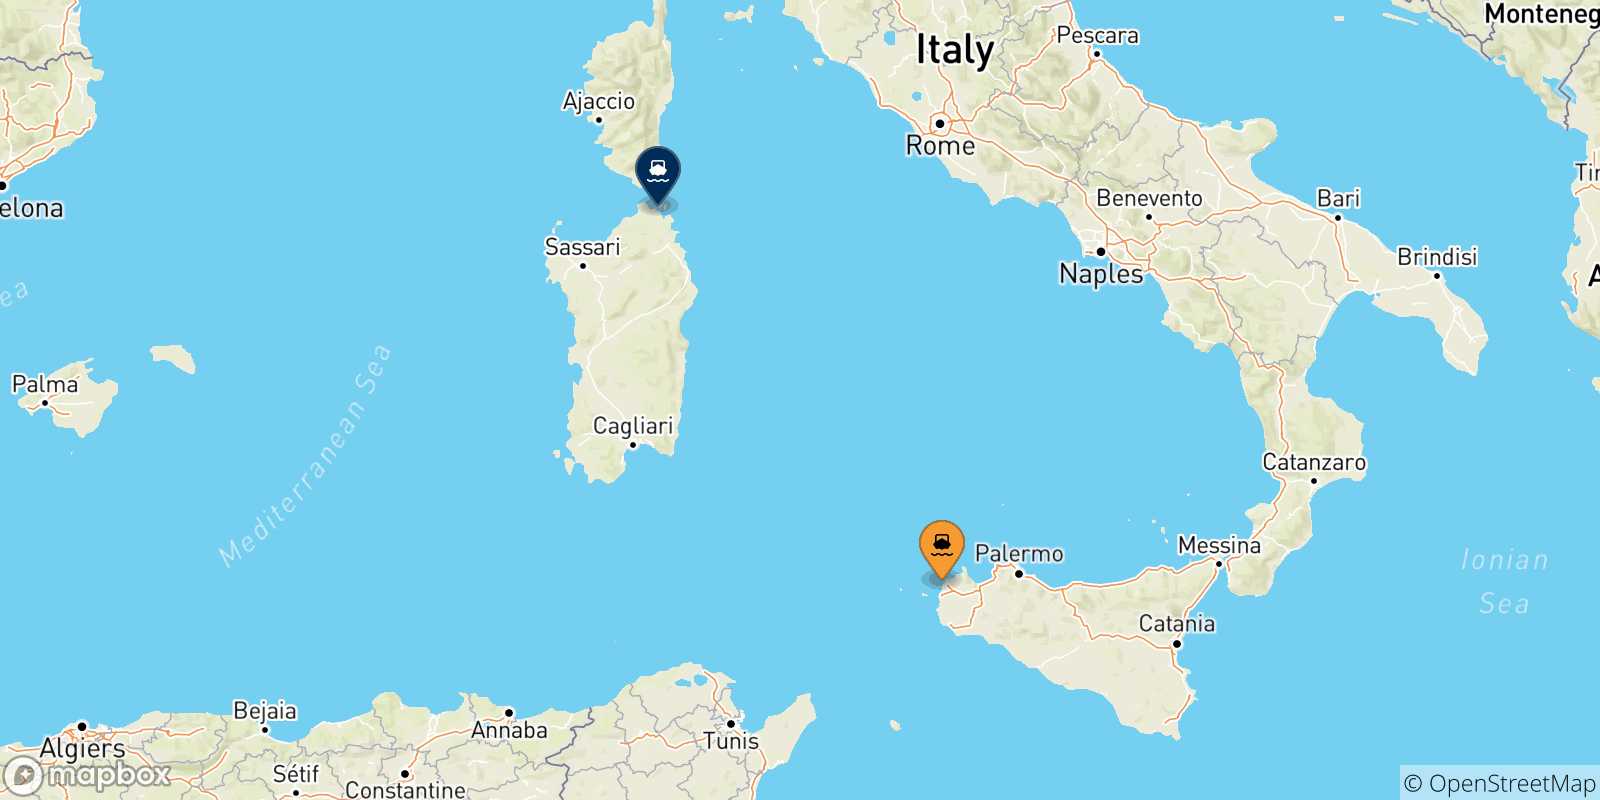 Mappa delle possibili rotte tra la Sicilia e Golfo Aranci